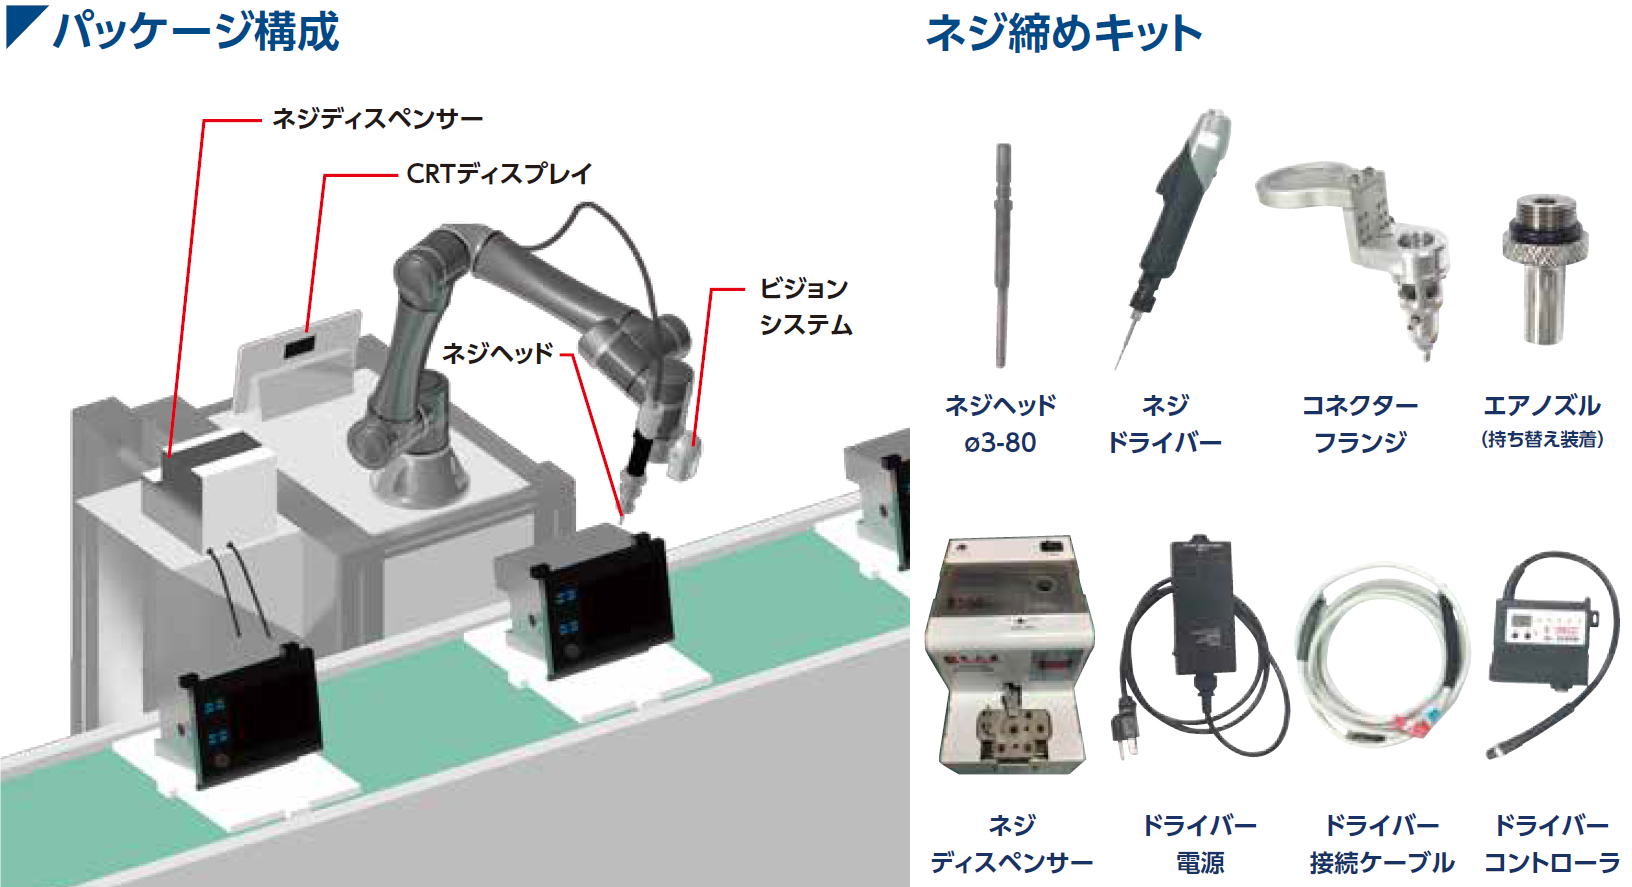 高島ロボットマーケティング 新ソリューション3種、低コストで協働ロボを